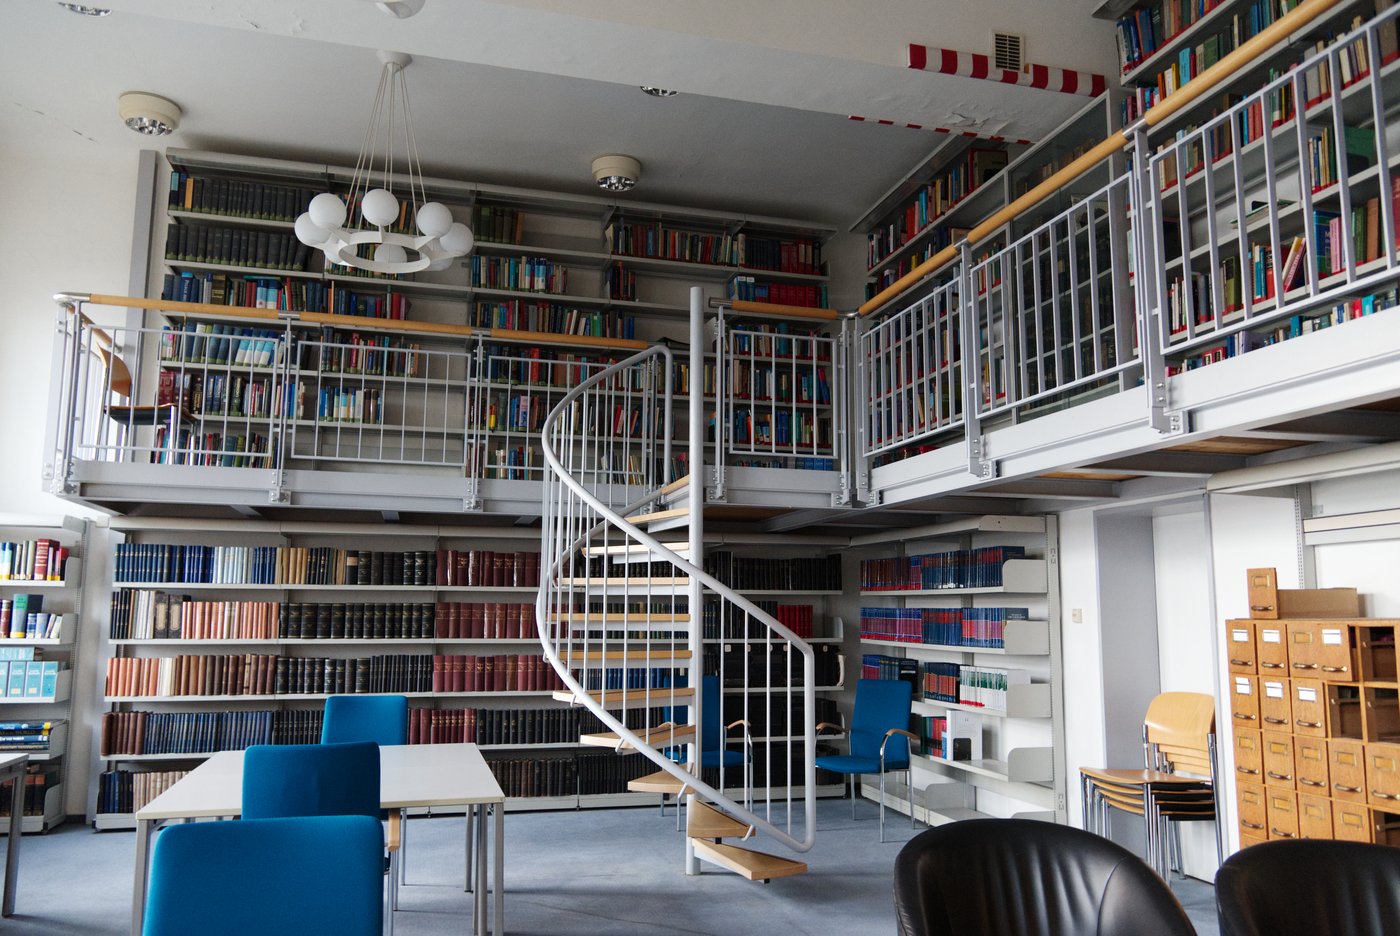 Zu sehen ist die Bibliothek des BNITMS, ein großer, heller Raum mit hohen Decken, in dem eine zweite Eben eingezogen wurde, die man über einekmetallende Wendeltreppe erreicht. An den Wänden stehen Bücherregale mit Büchern. In der Mitte des Raumes stehen kleine Tische mit blauen Stühlen.